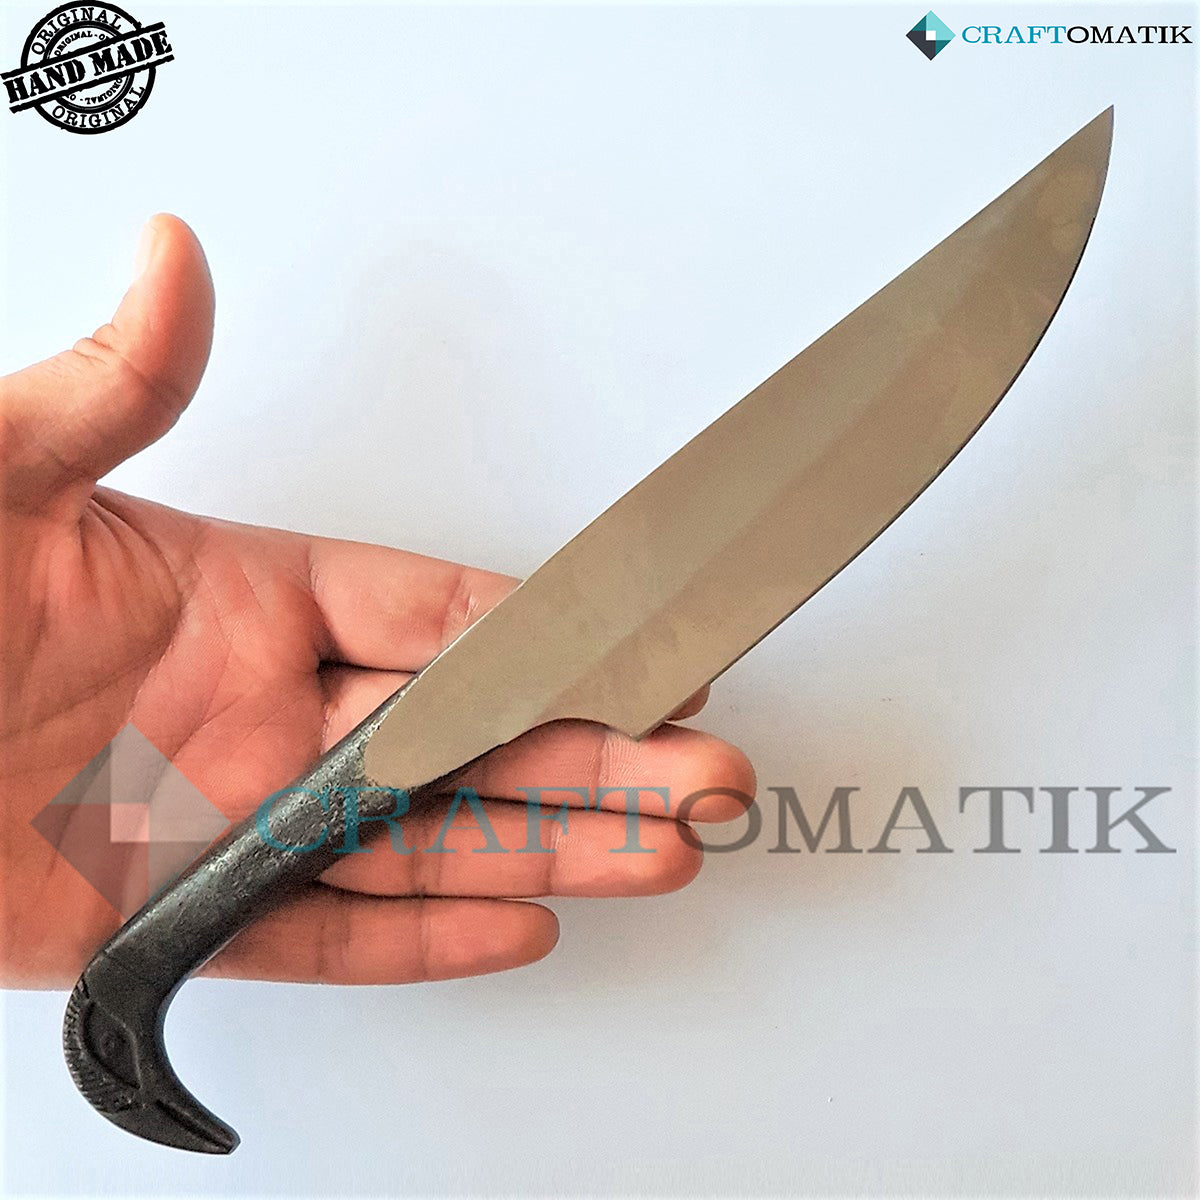 Vogelkopf Messer - I